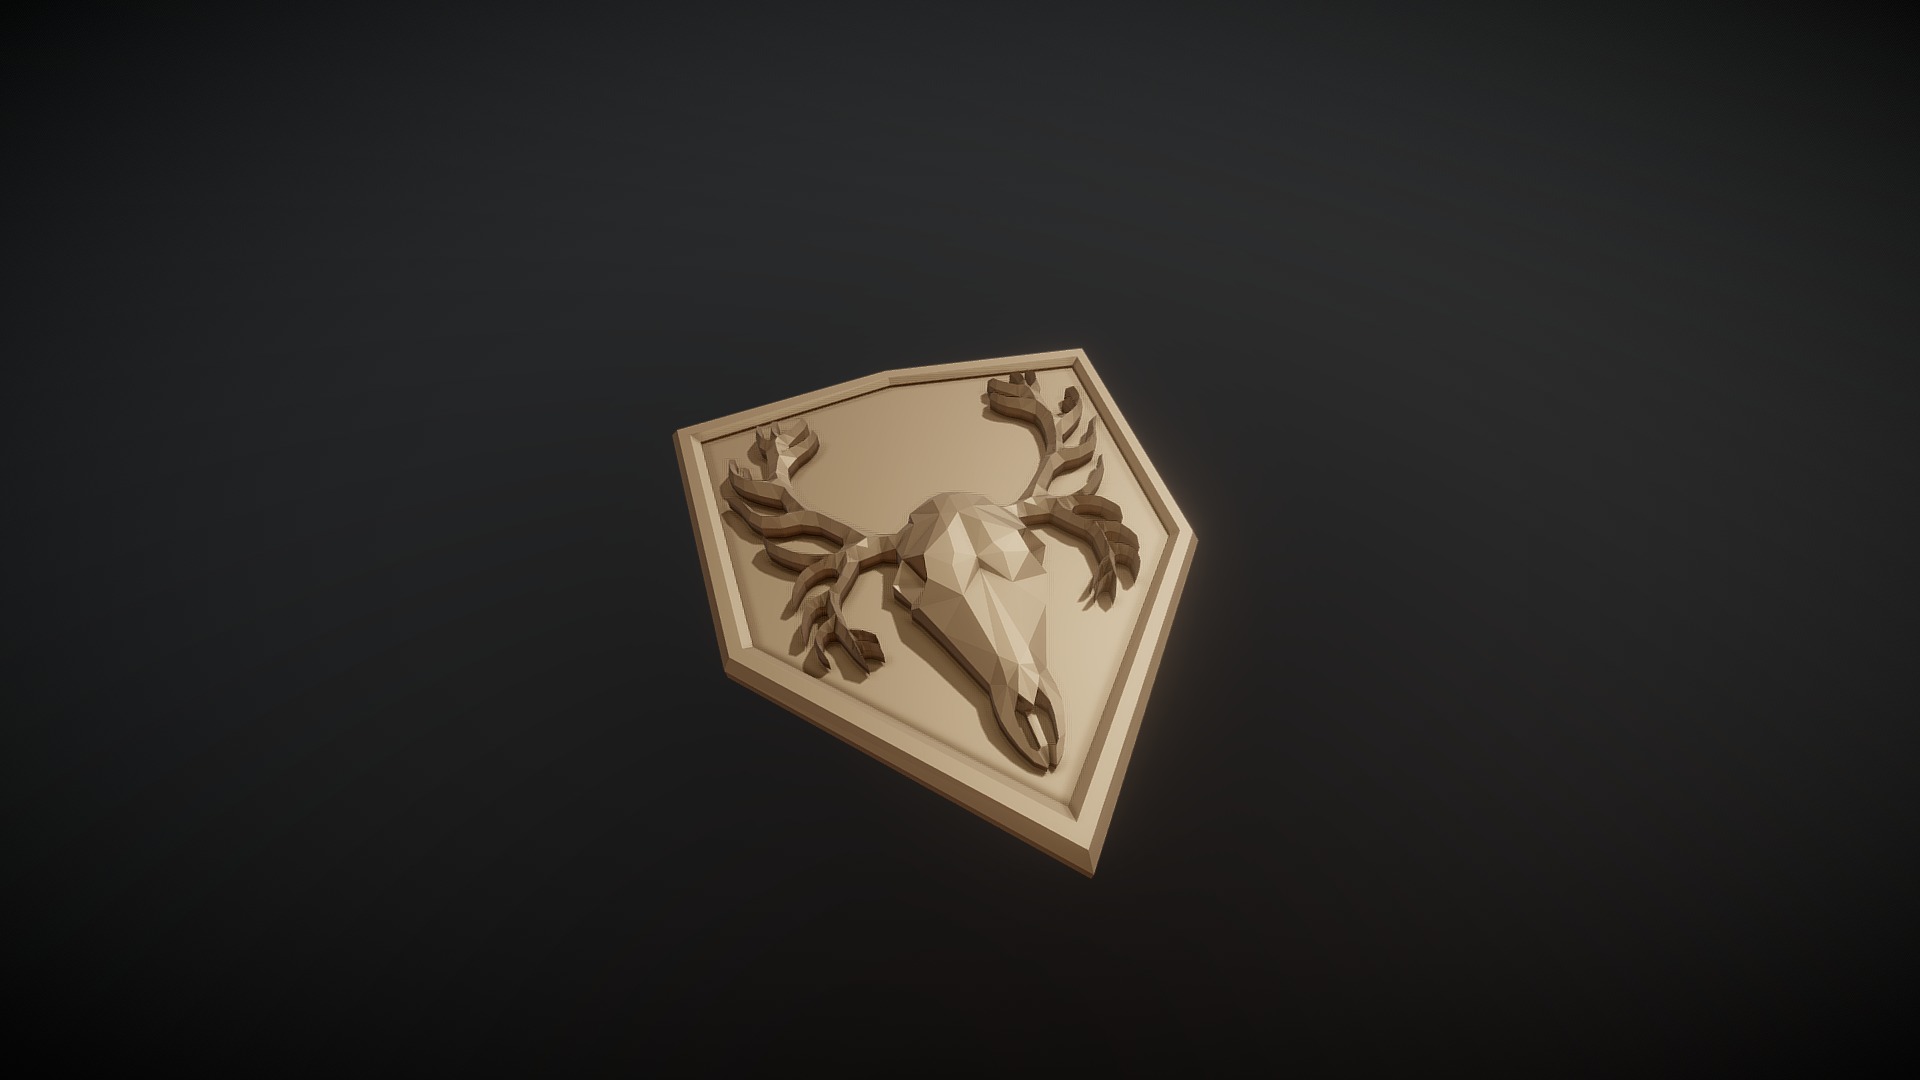 3D model 3D printable lowpoly art deer skull crest emblem